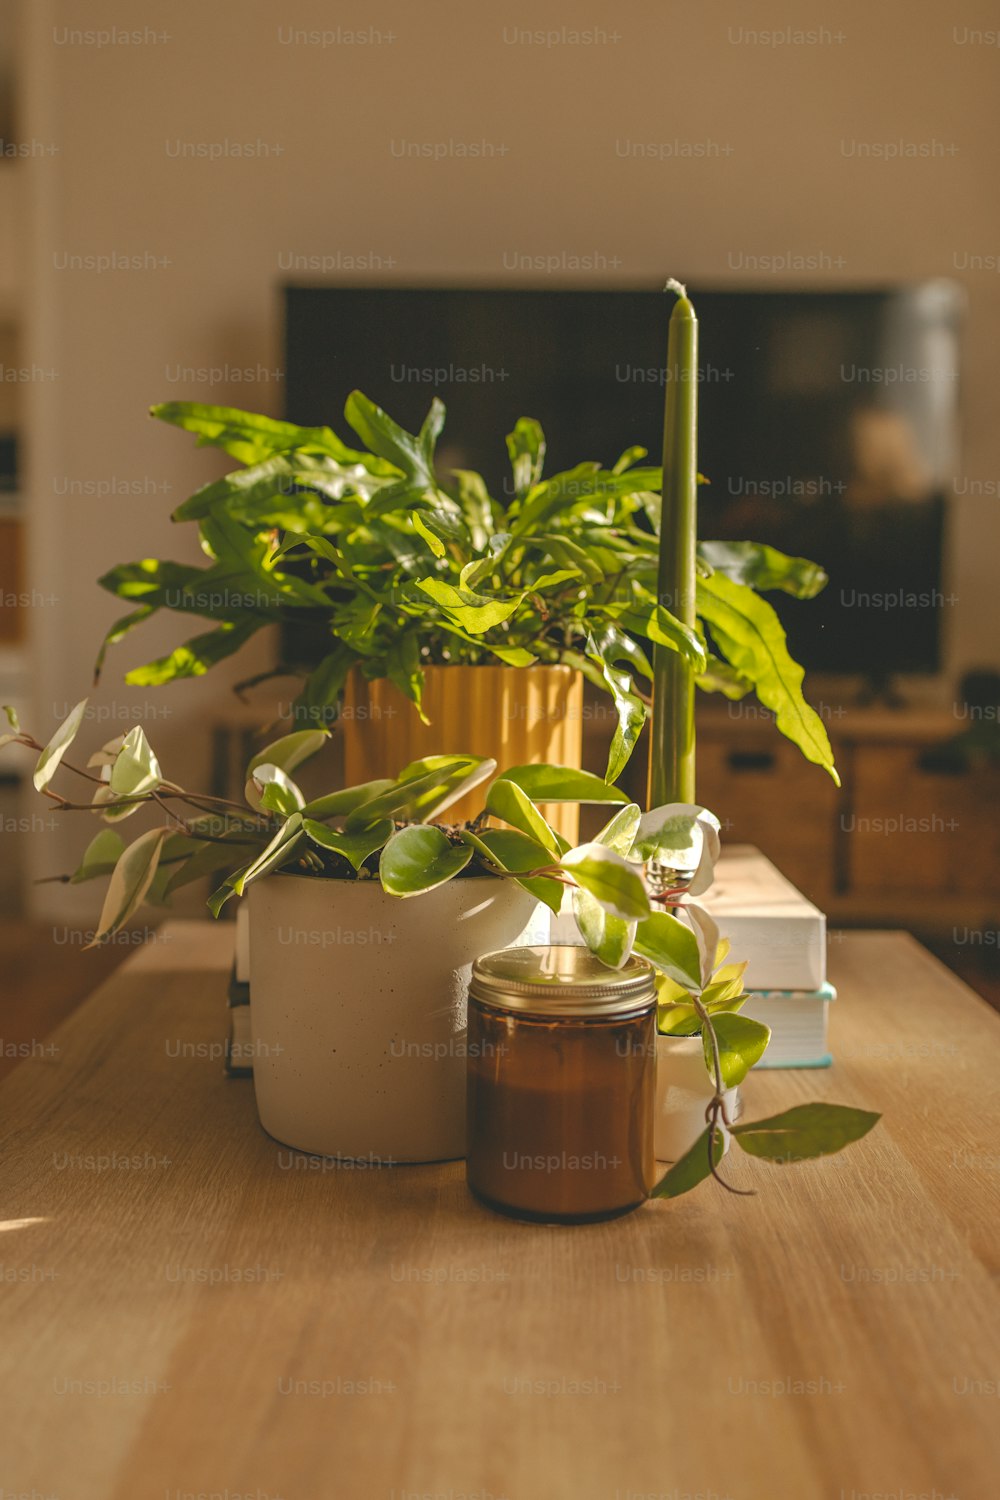 una mesa de madera cubierta con una vela y una planta en maceta